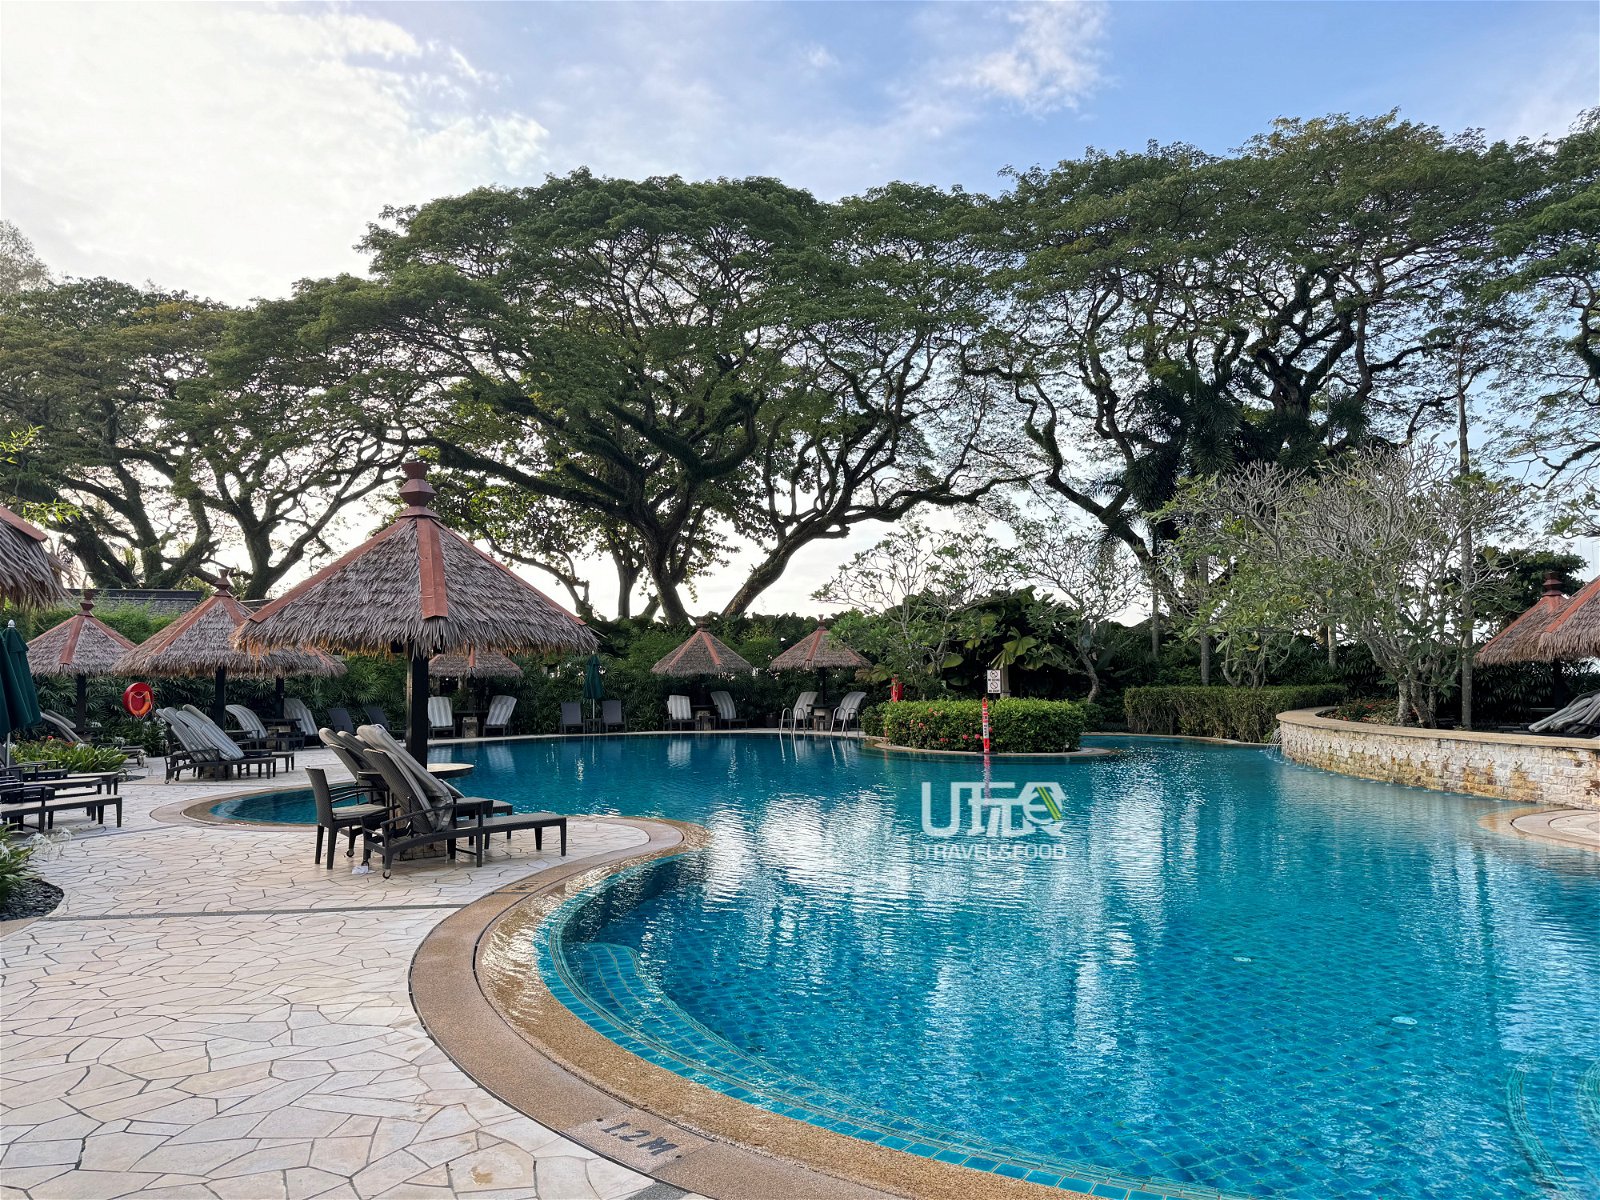 酒店提供主泳池、高尔夫球场和多种水上活动，满足不同的度假需求。